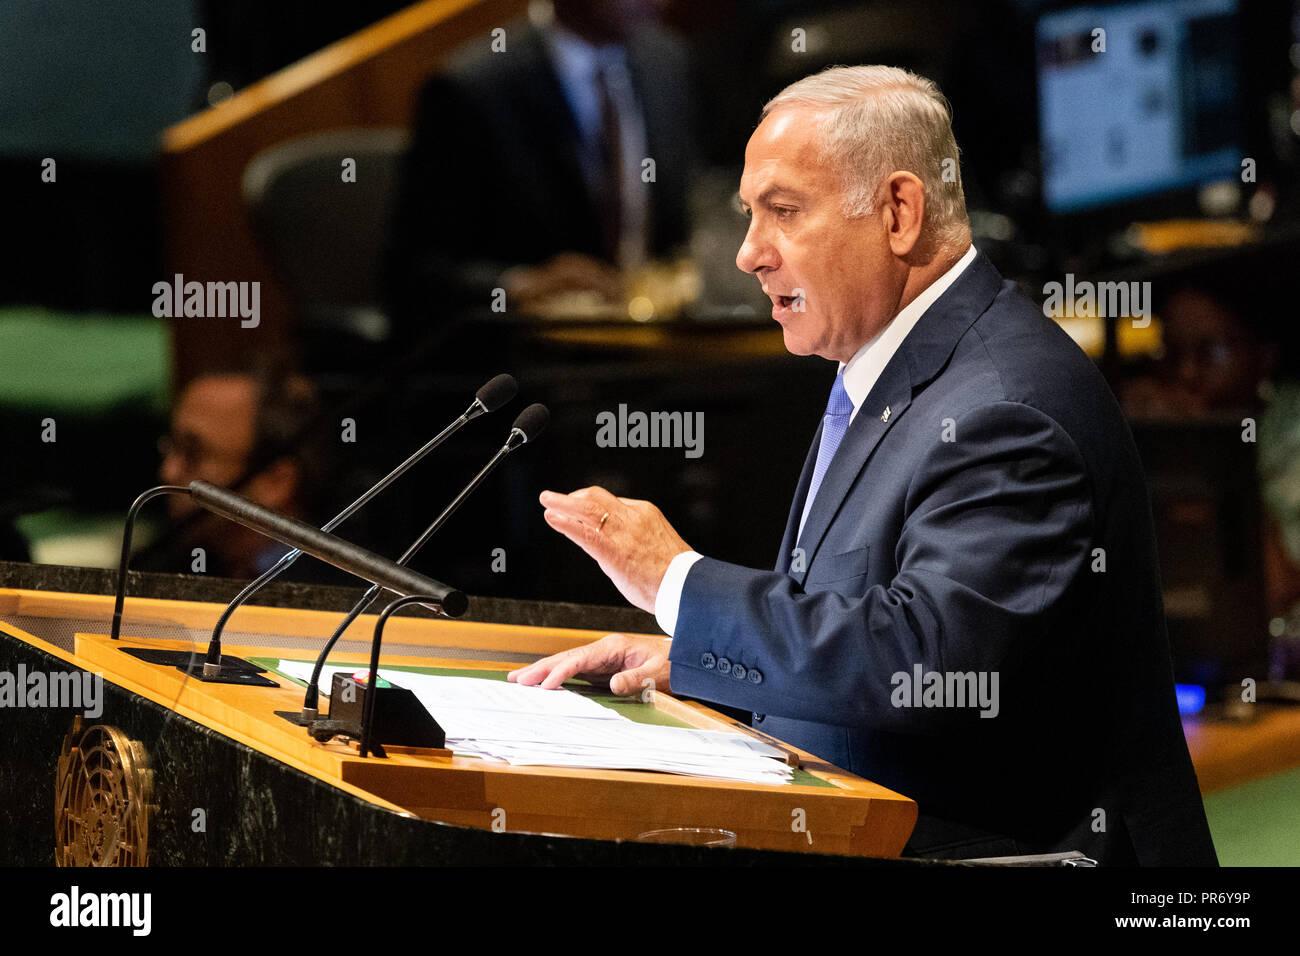 Benjamin Netanyahu, Premier Ministre d'Israël vu parler à l'Assemblée générale des Nations Unies Débat général de l'Organisation des Nations Unies à New York. Banque D'Images